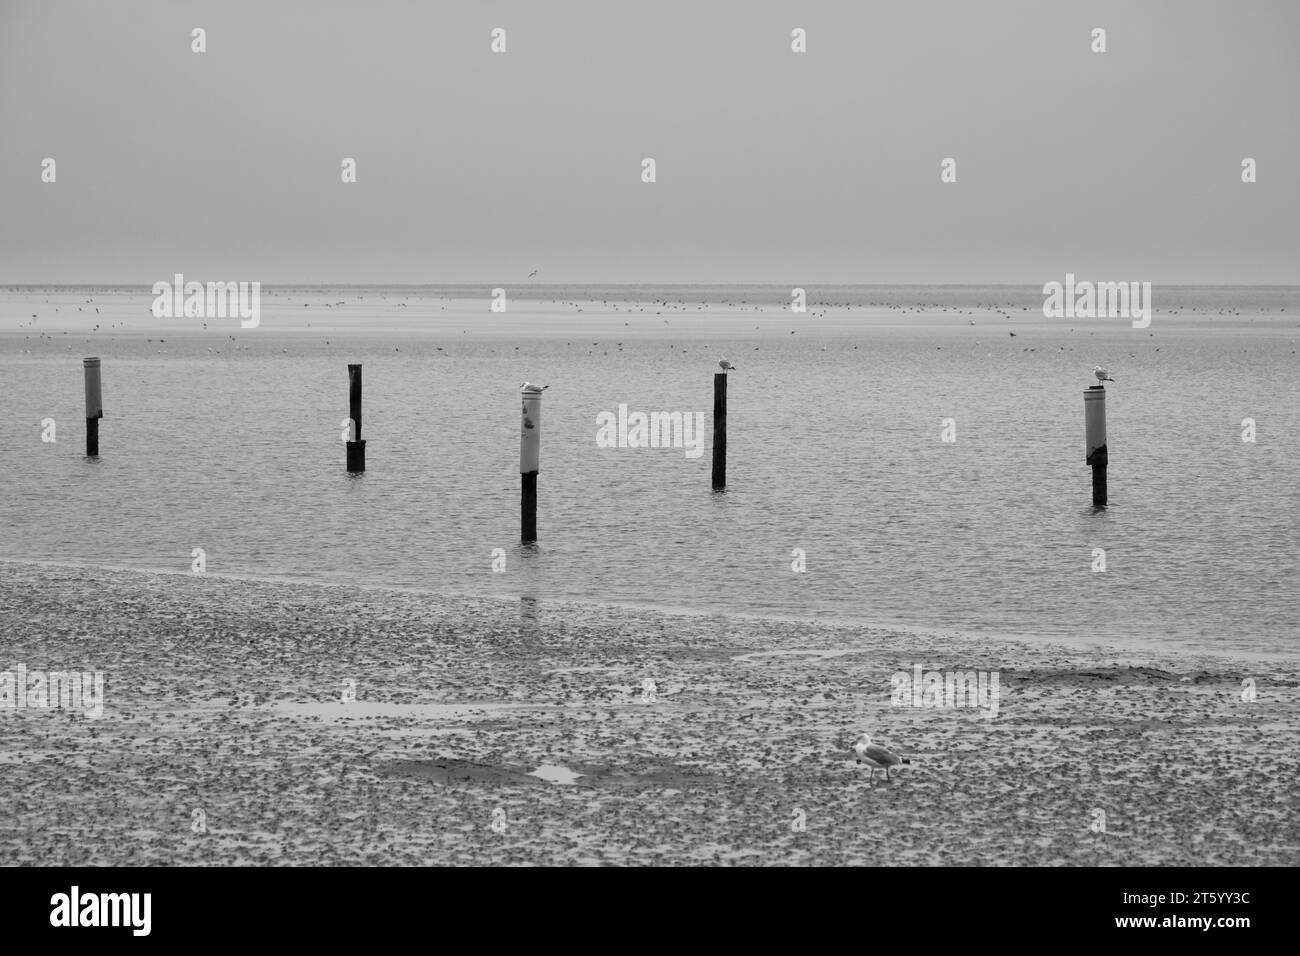 Gabbiani seduti su posti nel Parco nazionale del Mare di Wadden, bassa marea, Norddeich, Norden, Frisia orientale, bassa Sassonia, Germania Foto Stock